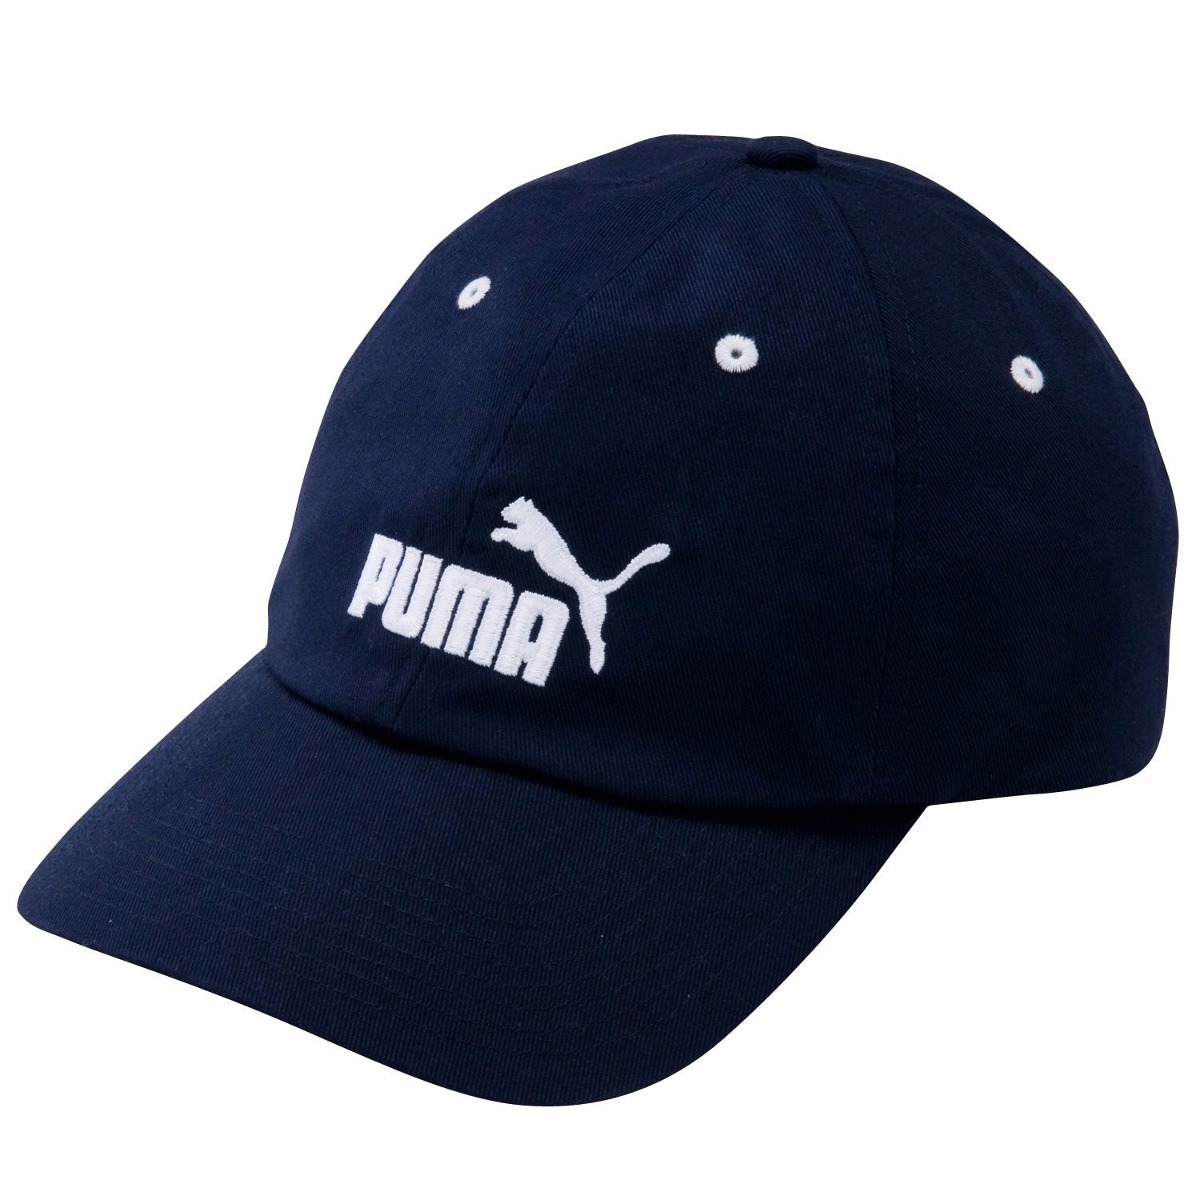 precio gorra puma original